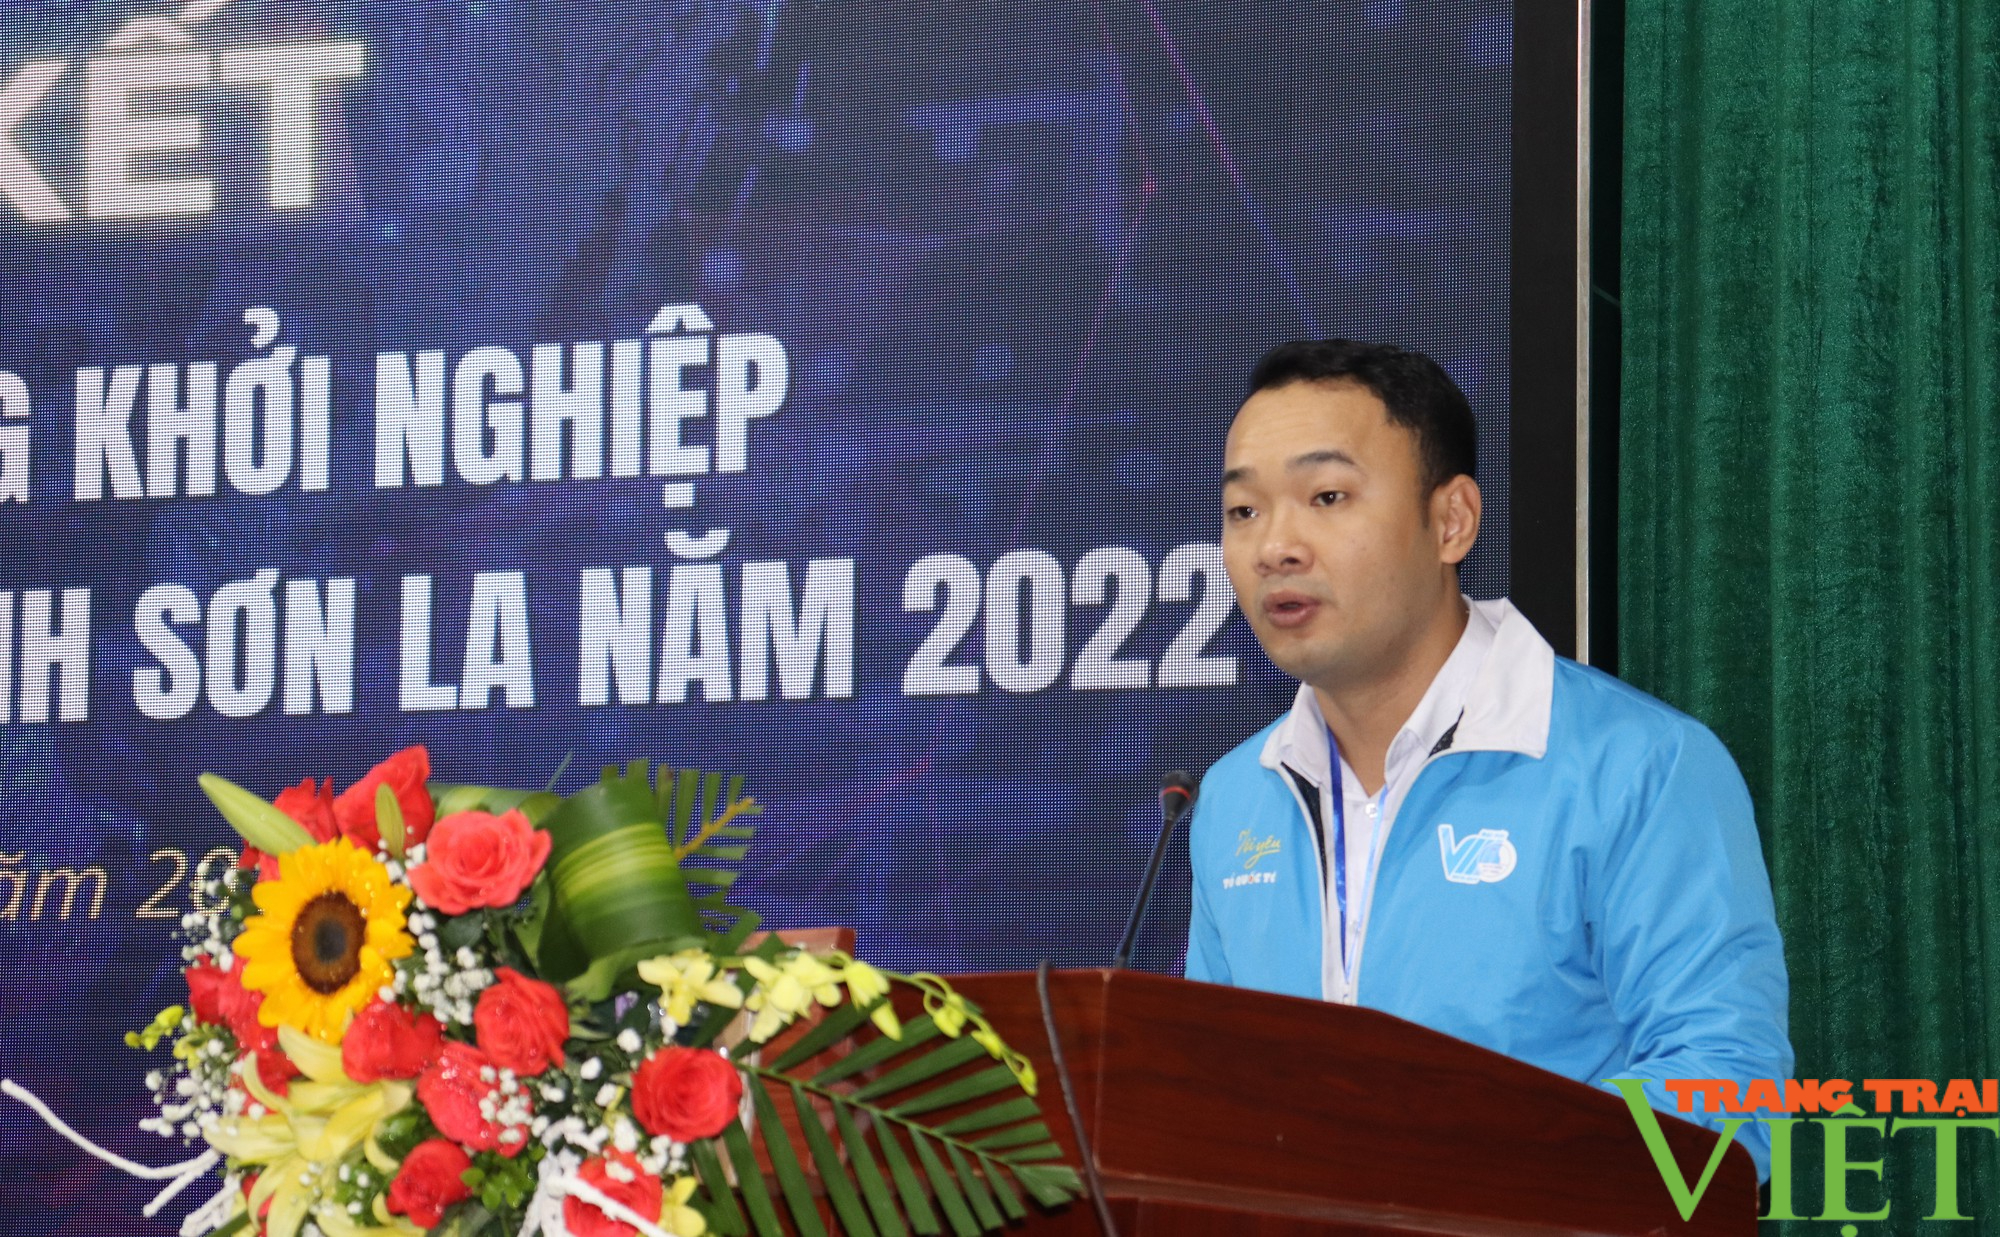 Phát triển hệ sinh thái du lịch Ngọc Chiến giành giải nhất  dự án khởi nghiệp trong thanh niên tỉnh Sơn La - Ảnh 2.